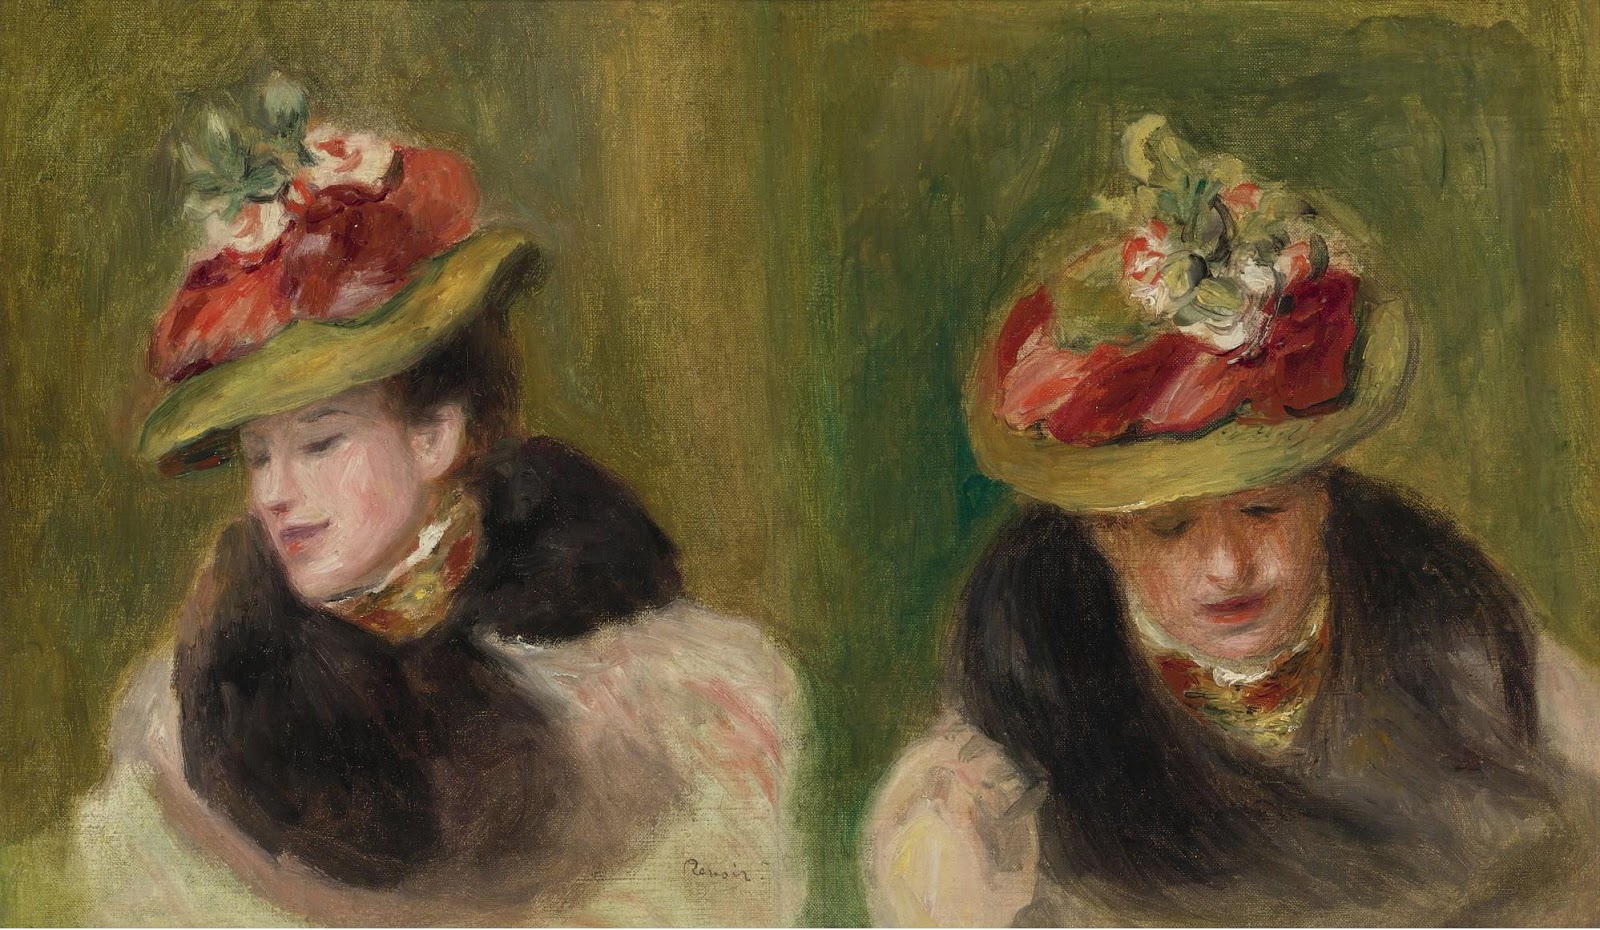 Pierre+Auguste+Renoir-1841-1-19 (809).jpg